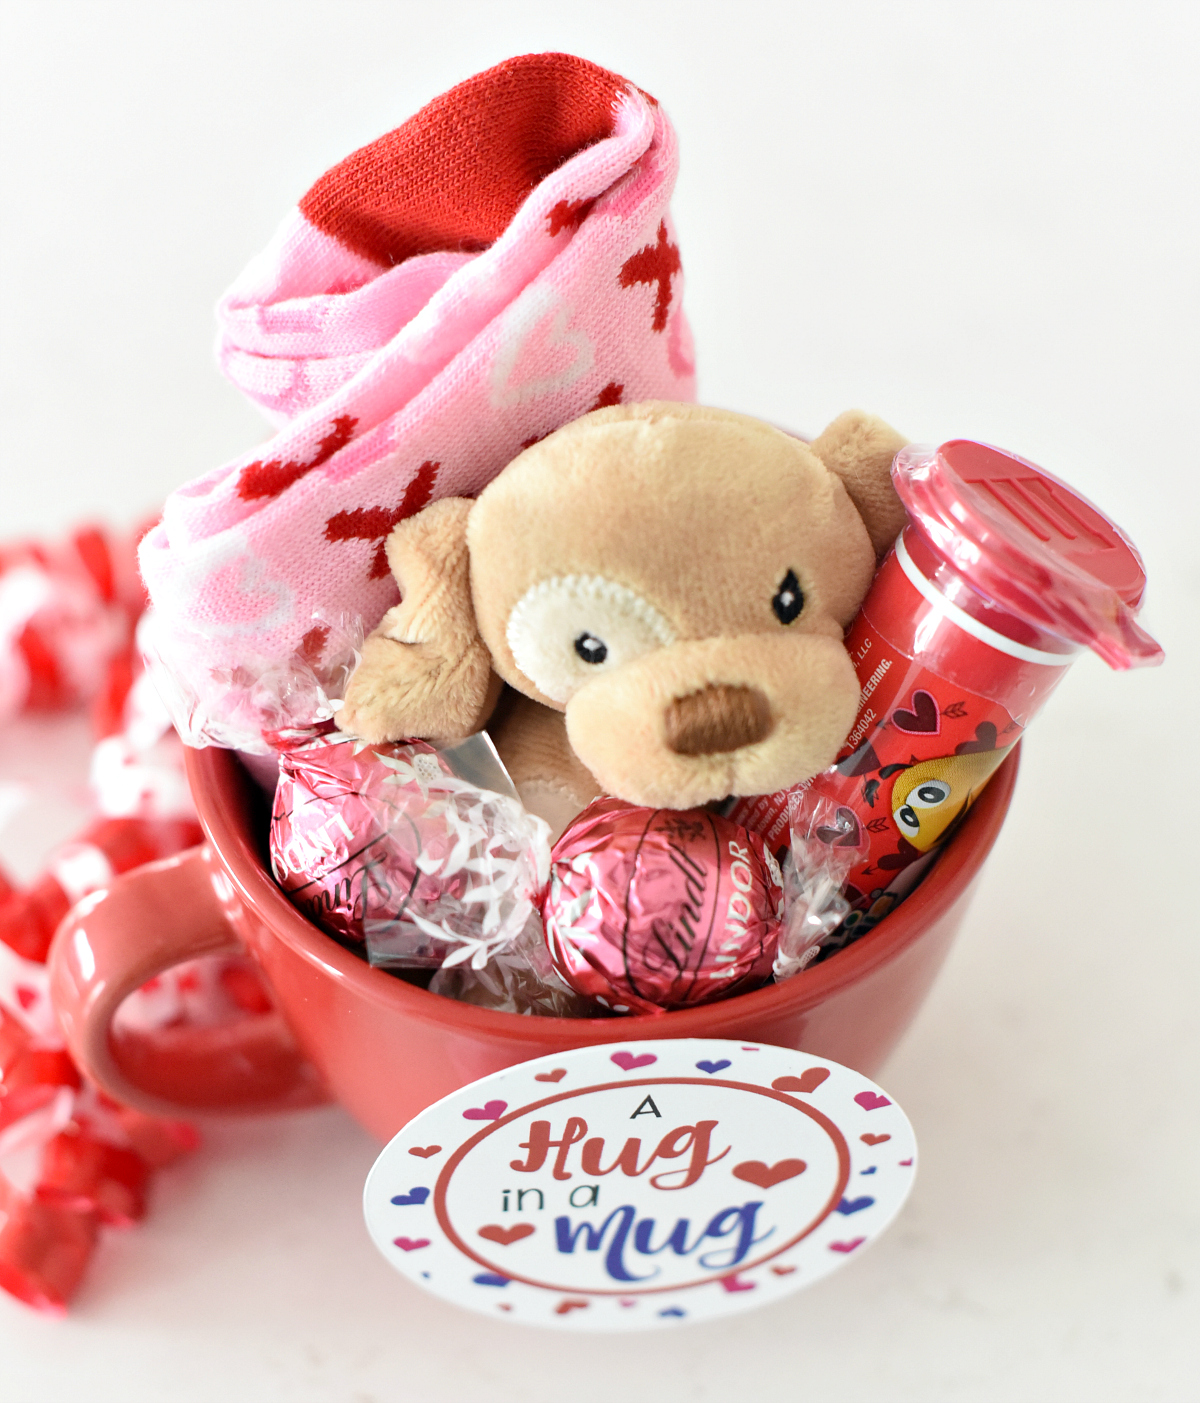 Fun Valentines Gift Idea for Kids - Fun-Squared